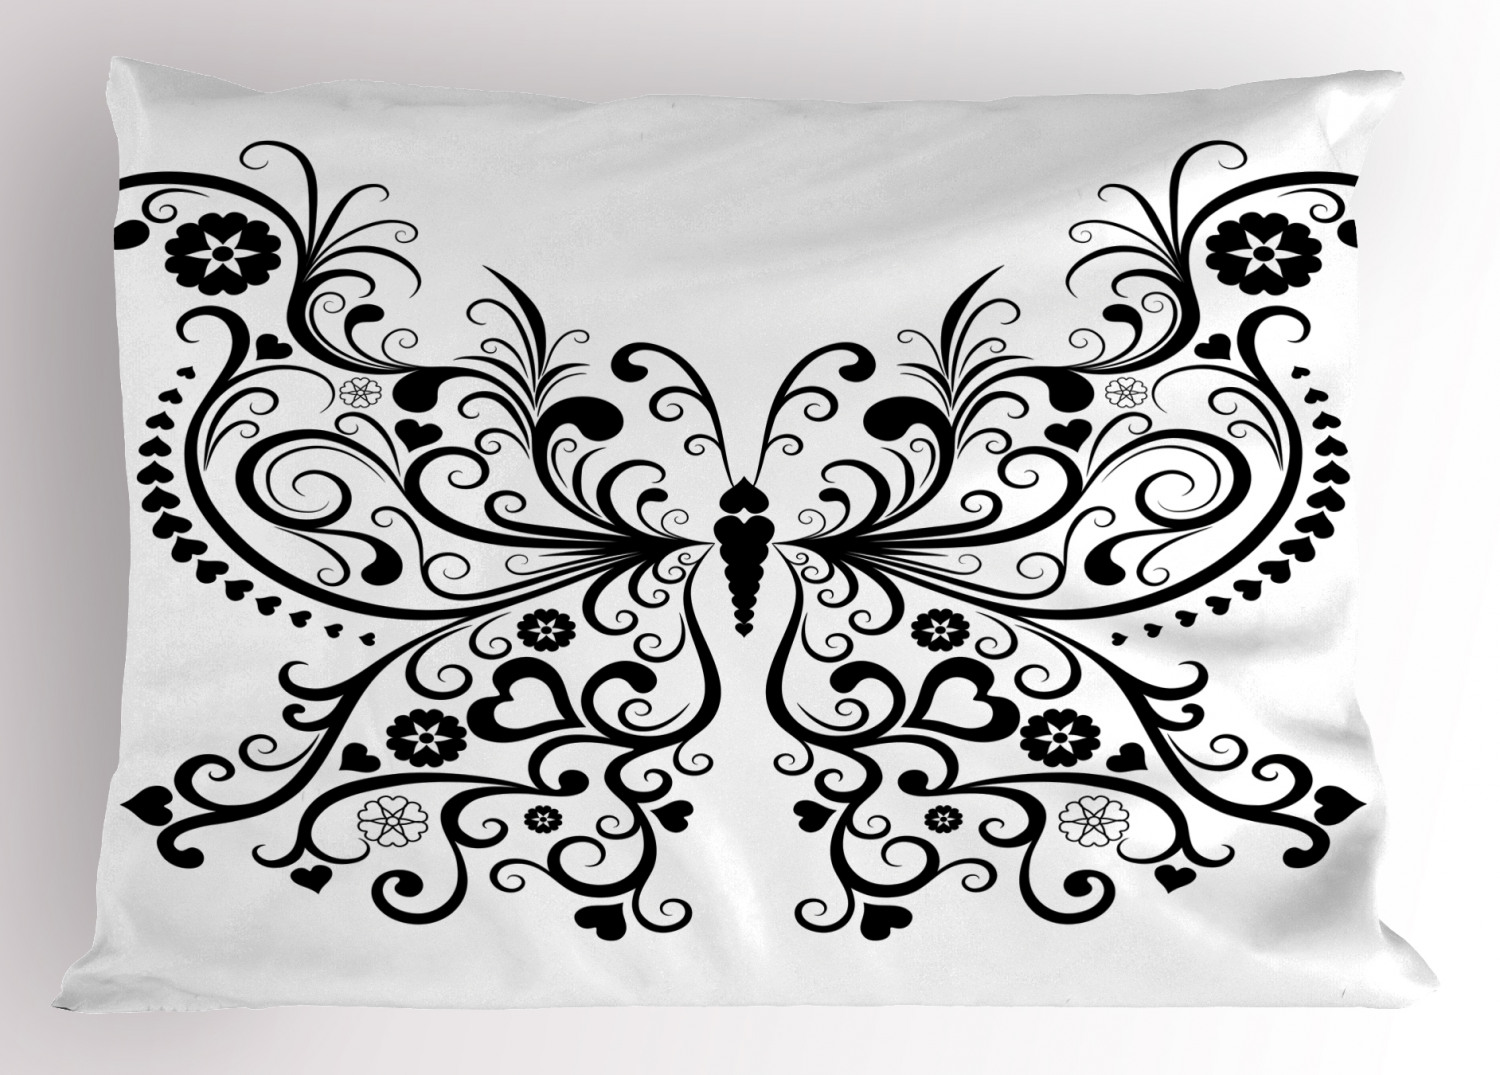 Details about   Lively Vintage Pillow Sham Decorative Pillowcase 3 Sizes Bedroom Decoration 